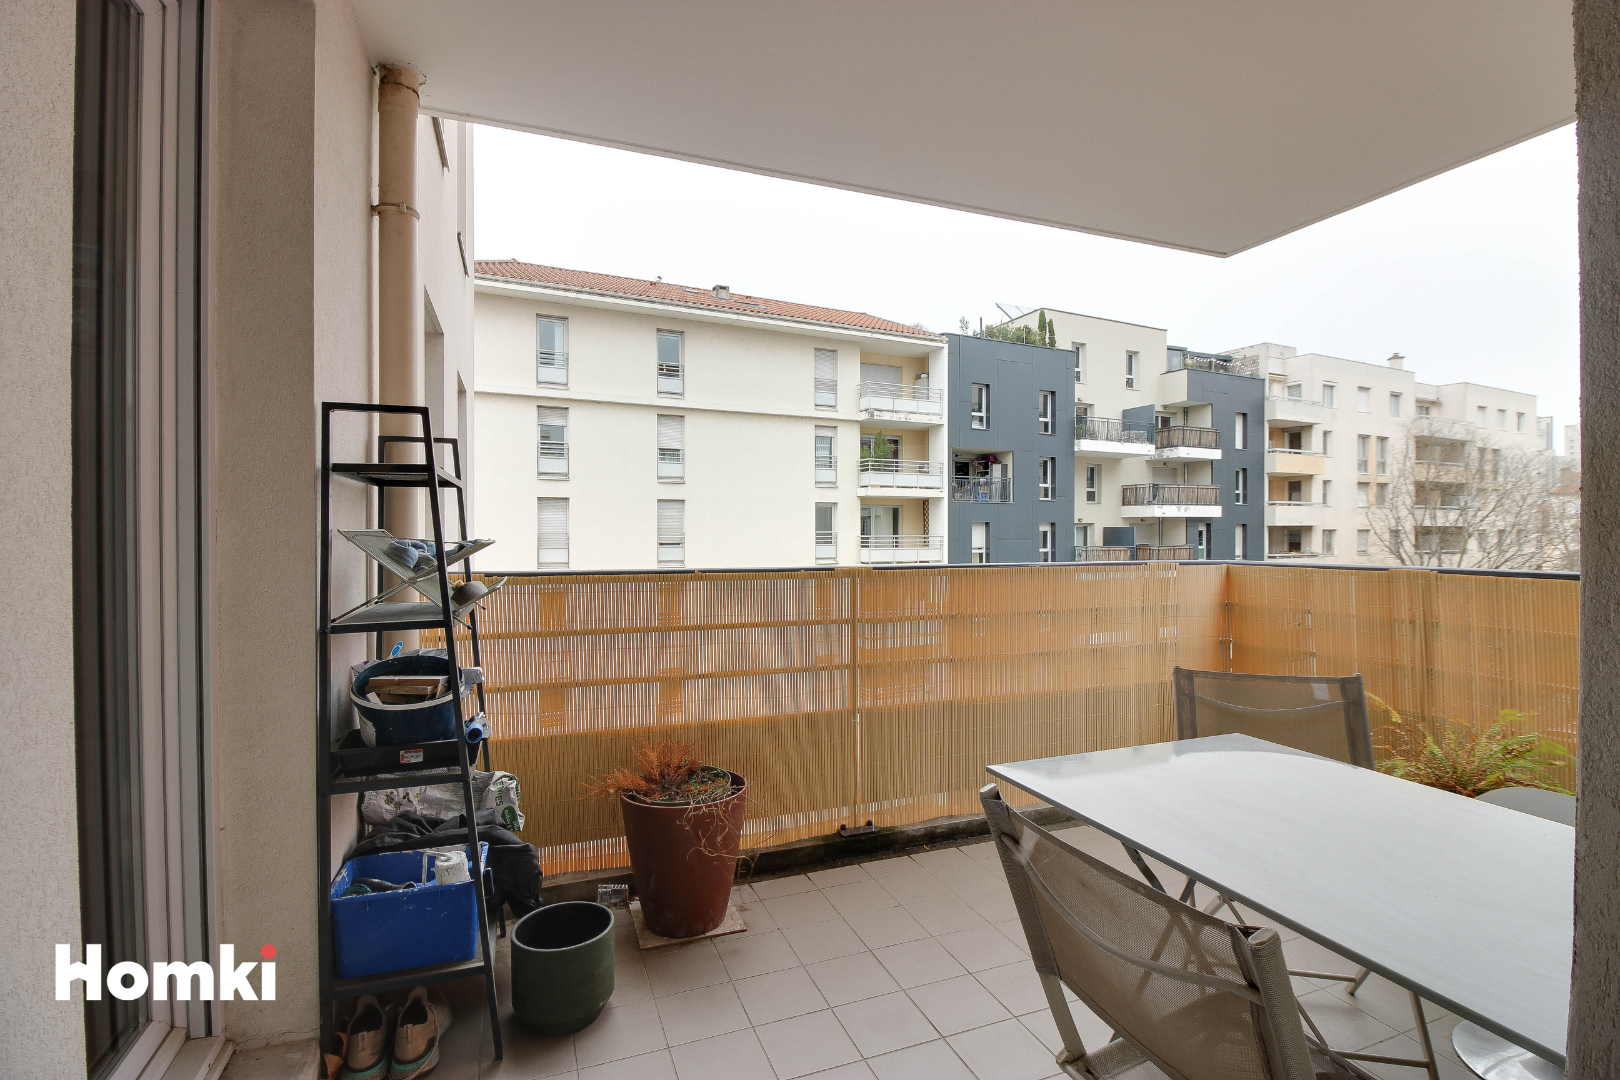 Homki - Vente Appartement  de 47.0 m² à Villeurbanne 69100